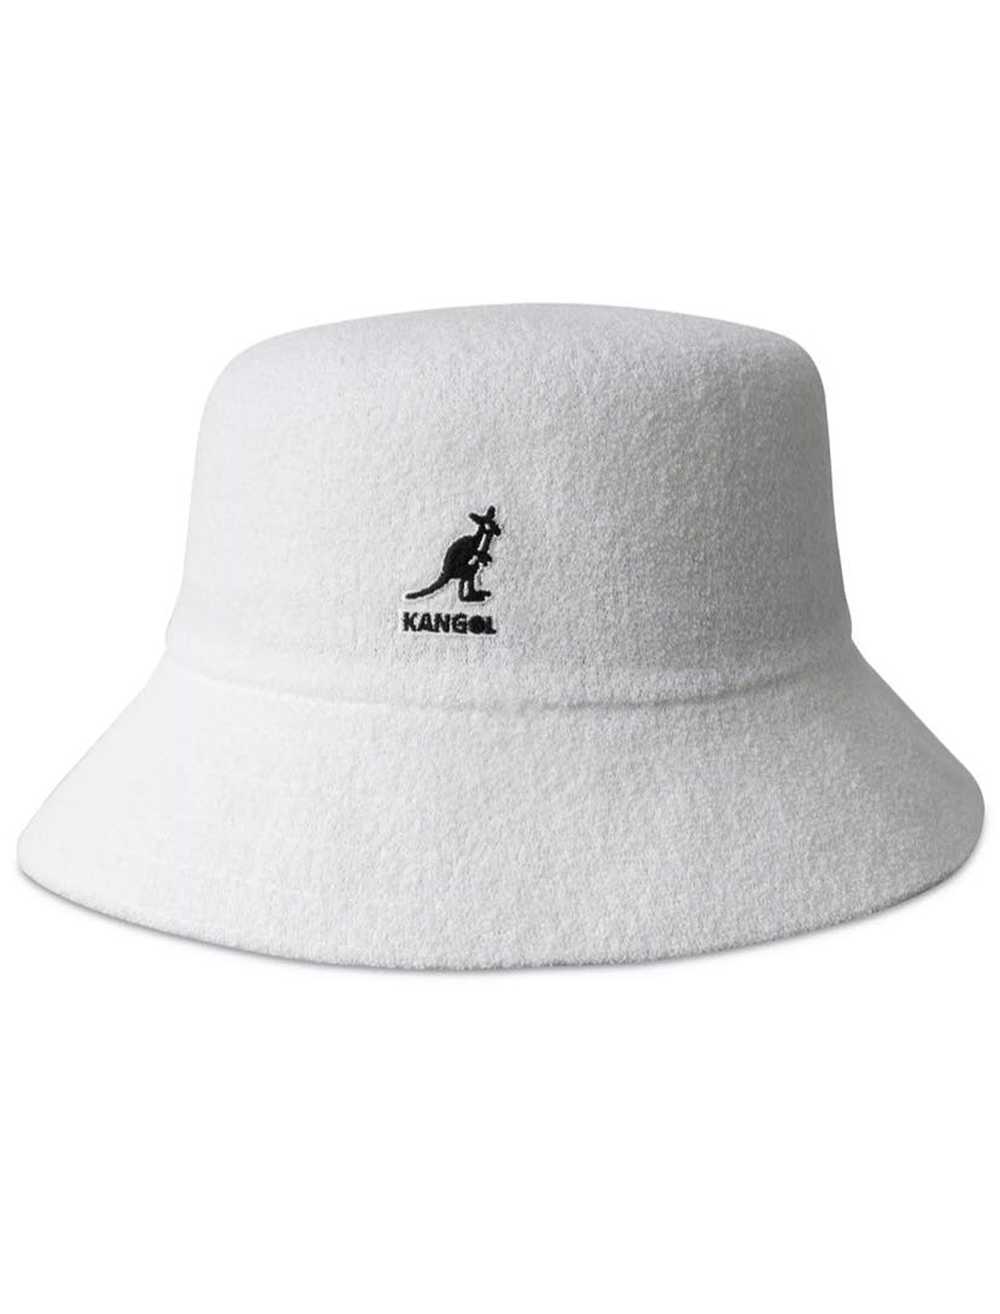 Kangol Kangol Bermuda Bucket Hat - image 1